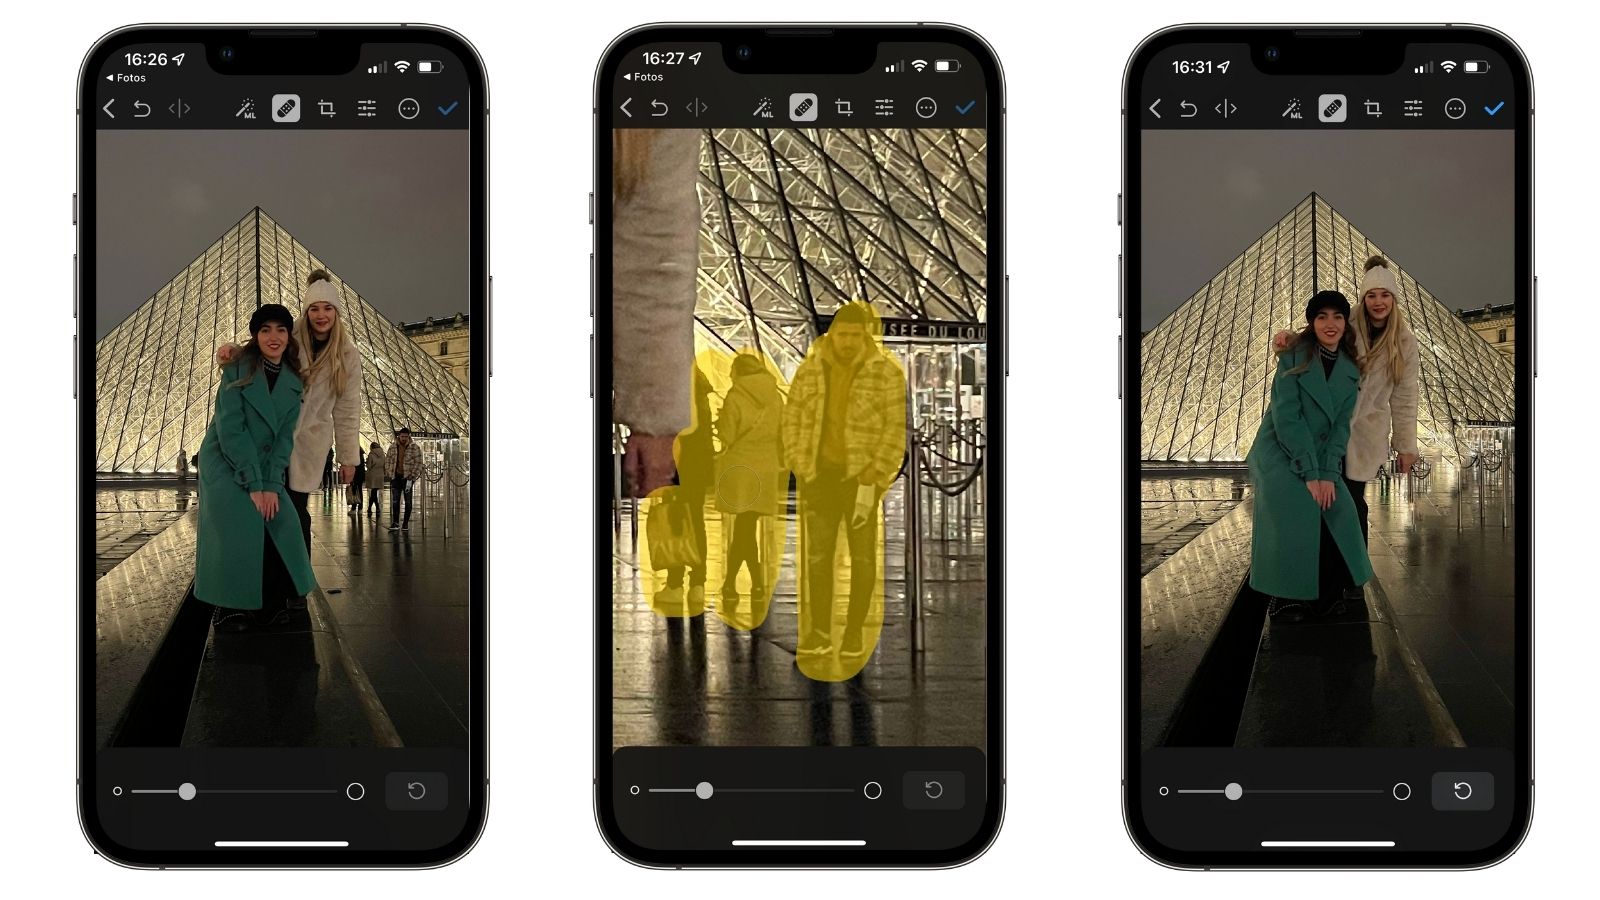 App borrar personas fotos iPhone | Blog K-tuin